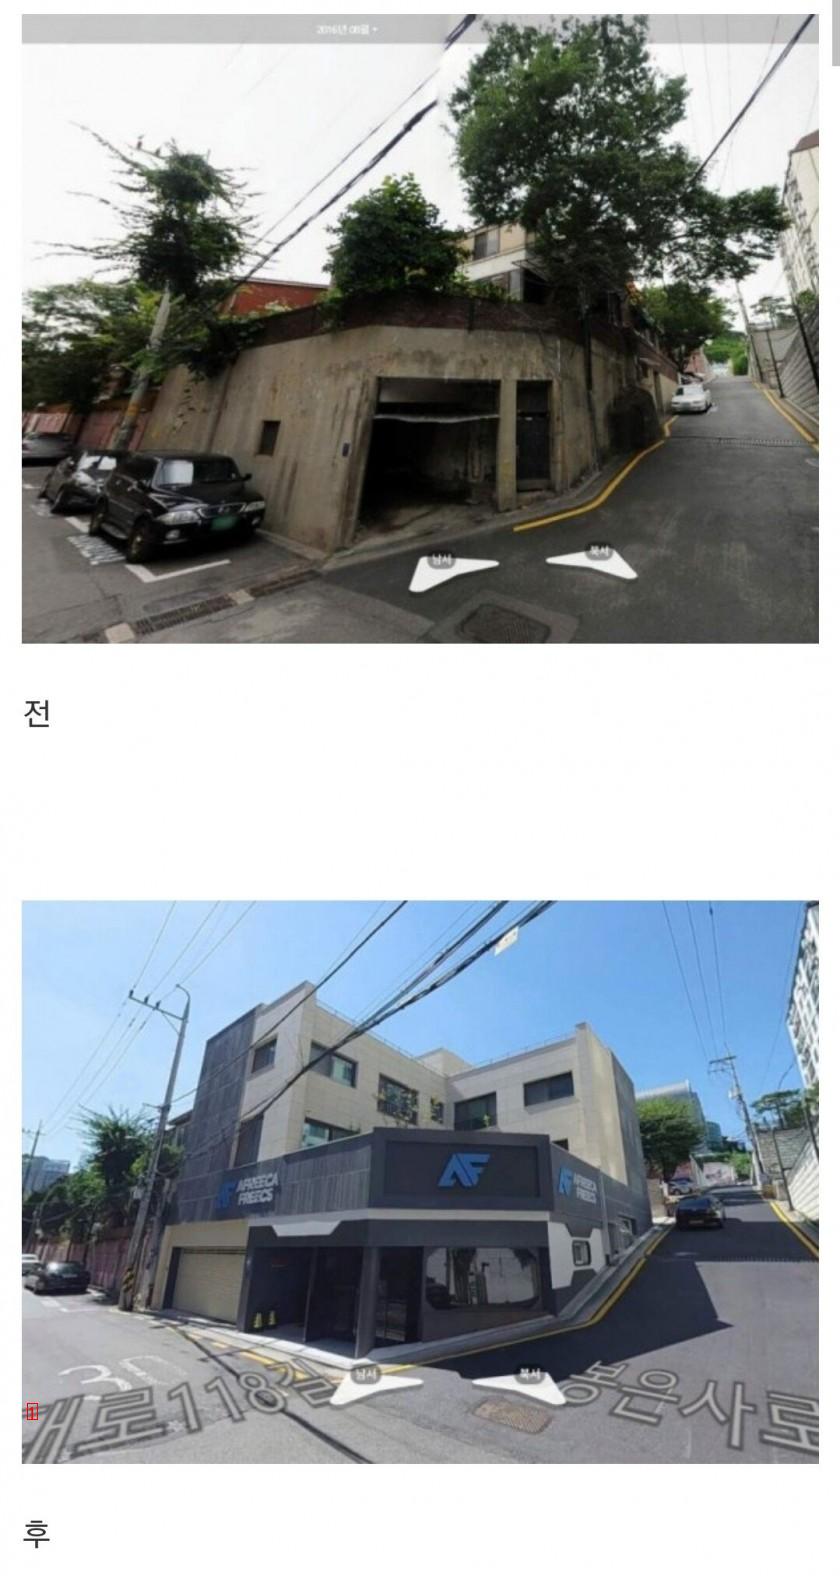 Han Seung-yeon's detached house in Cara, Samseong-dong, worth 16 billion won